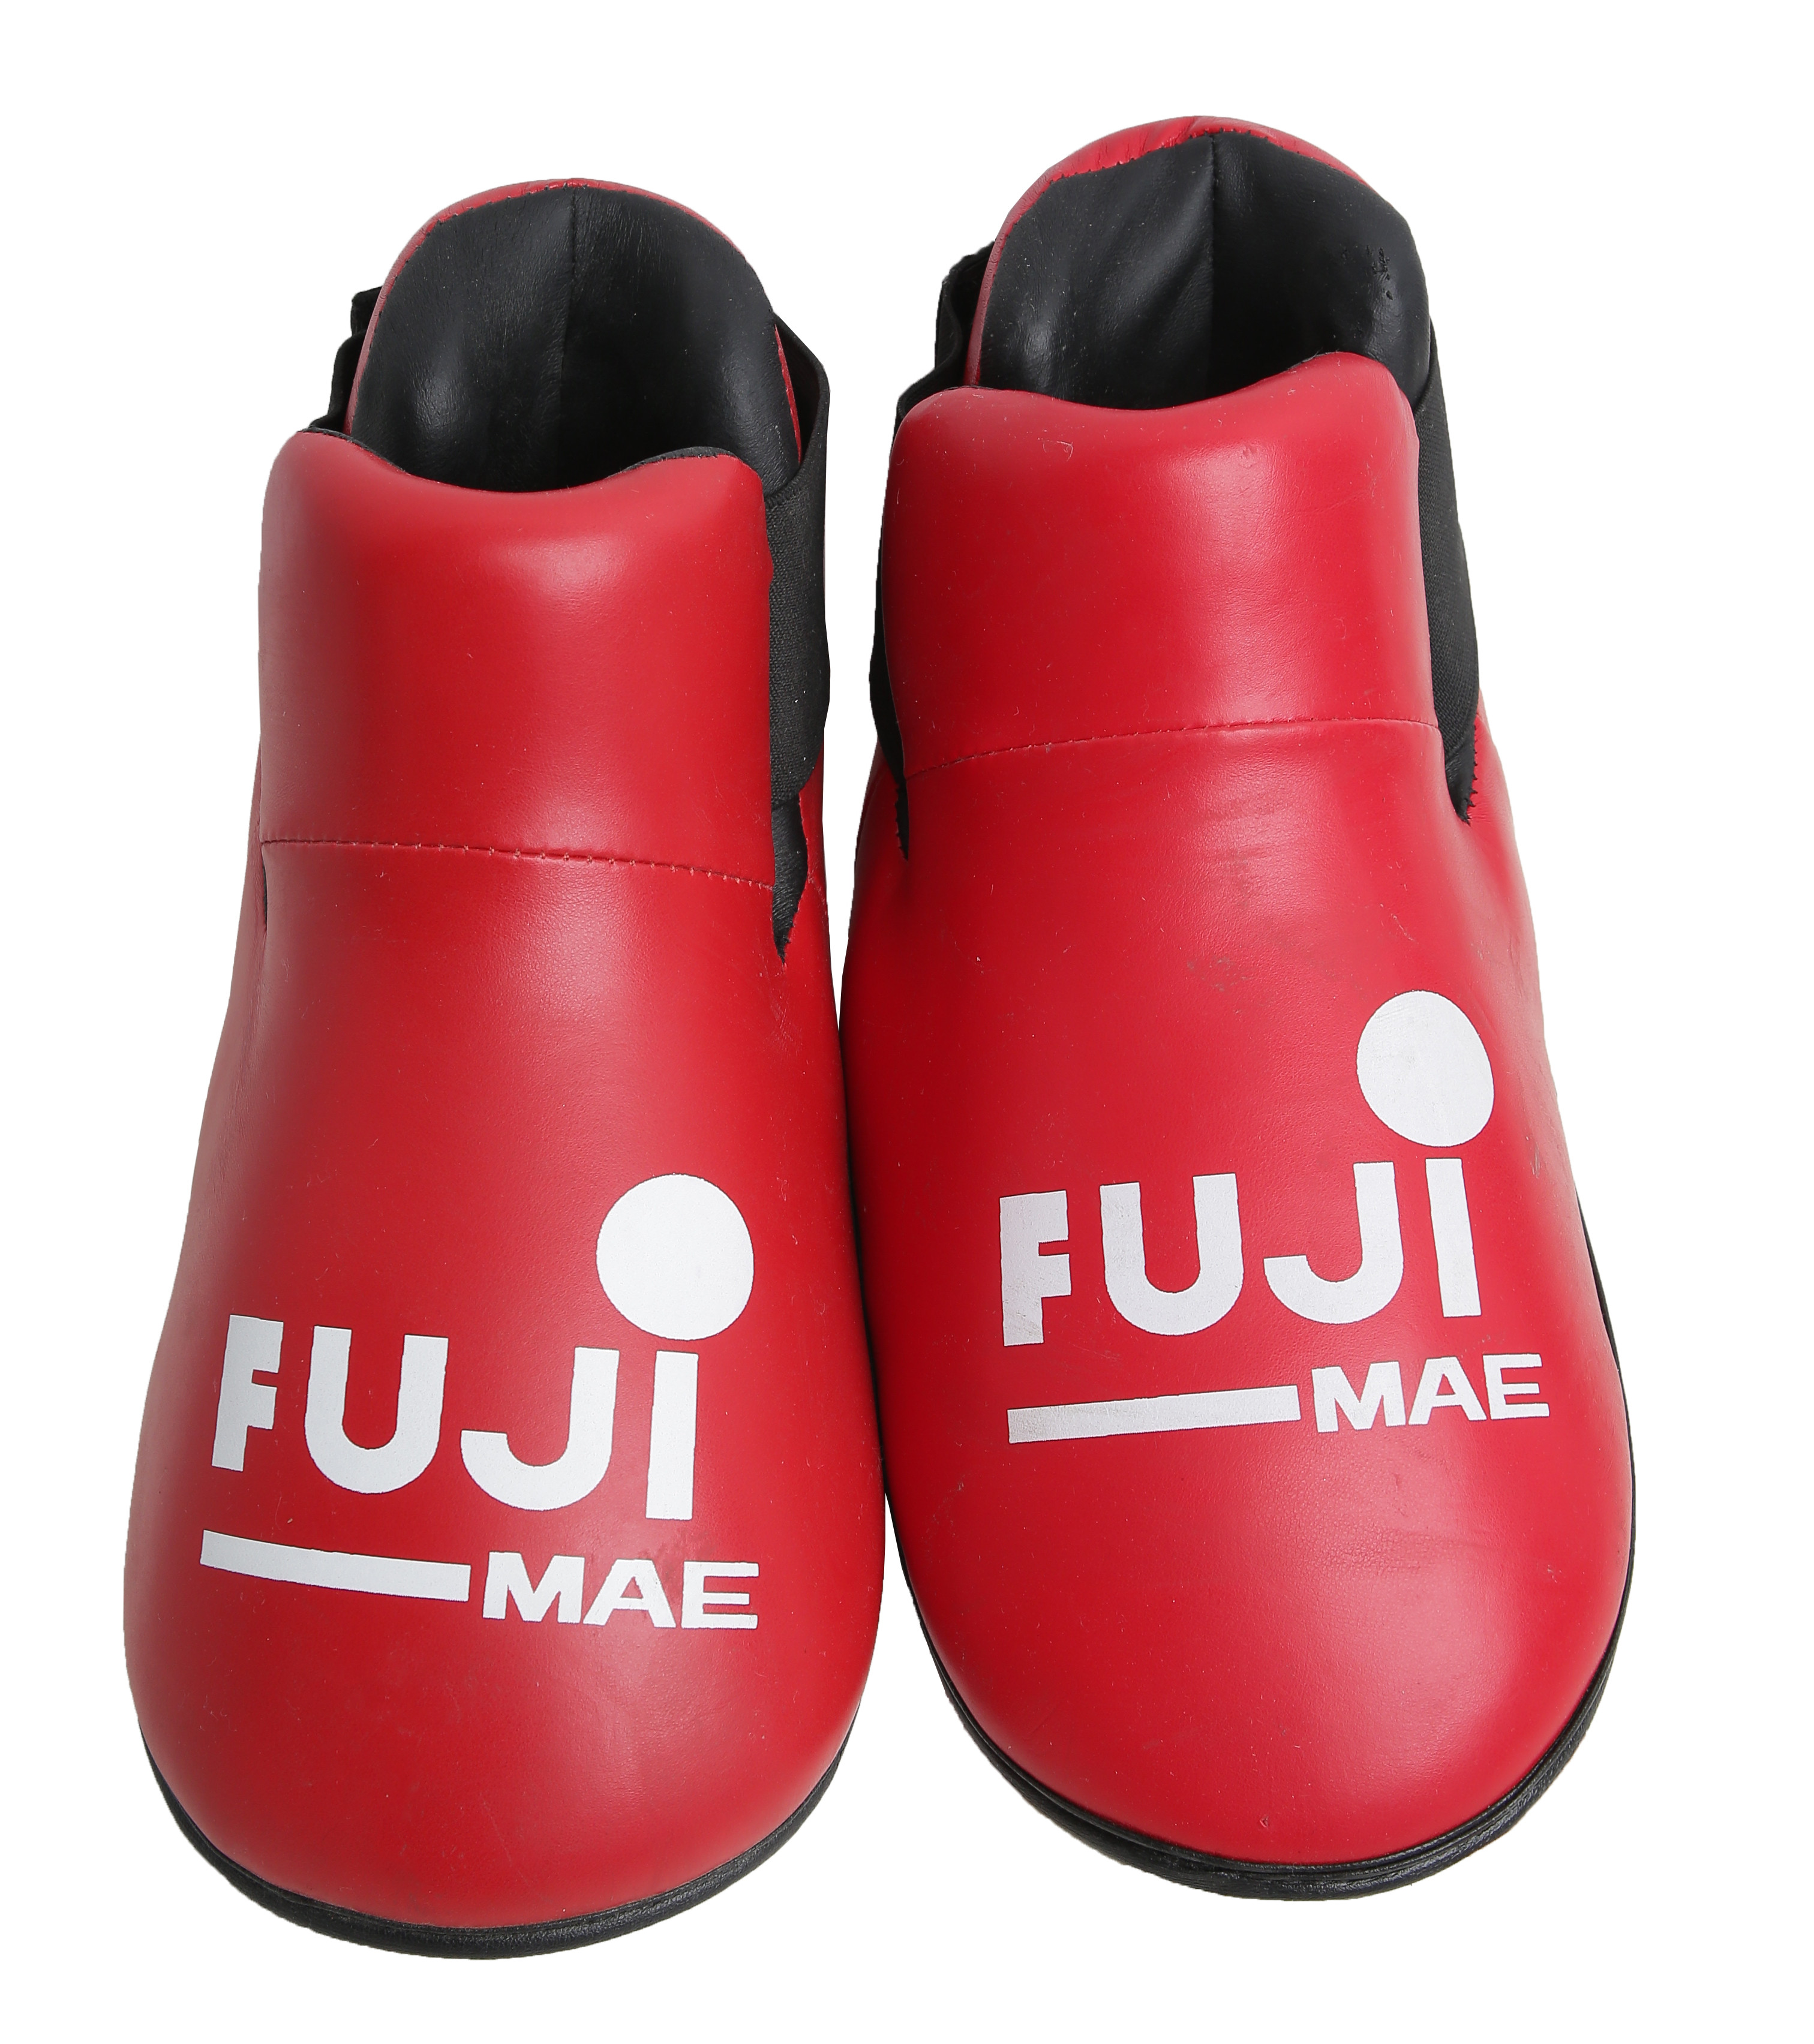 

Футы fuji mae red